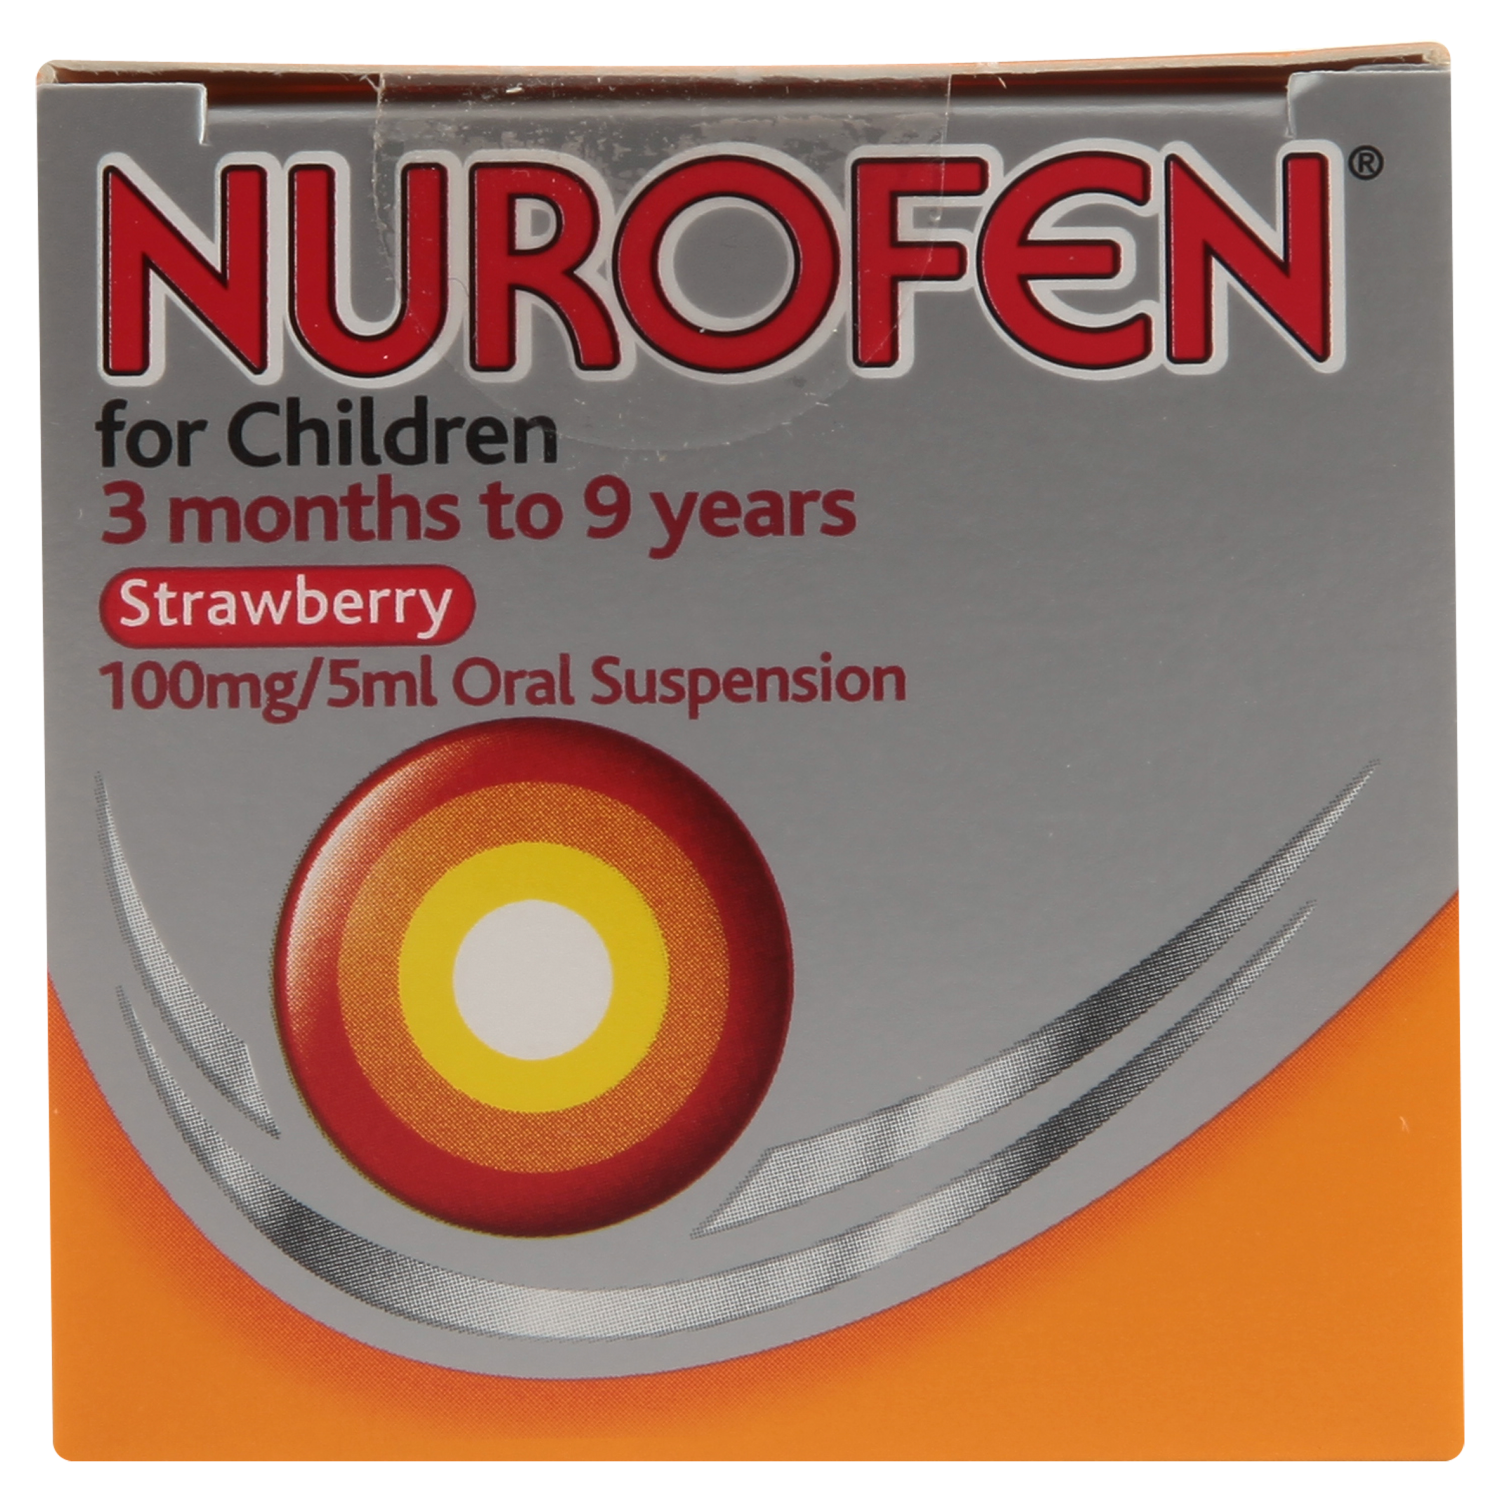 Nurofen for Children 3 months to 9 years Strawberry Flavour Oral Suspension 100ml